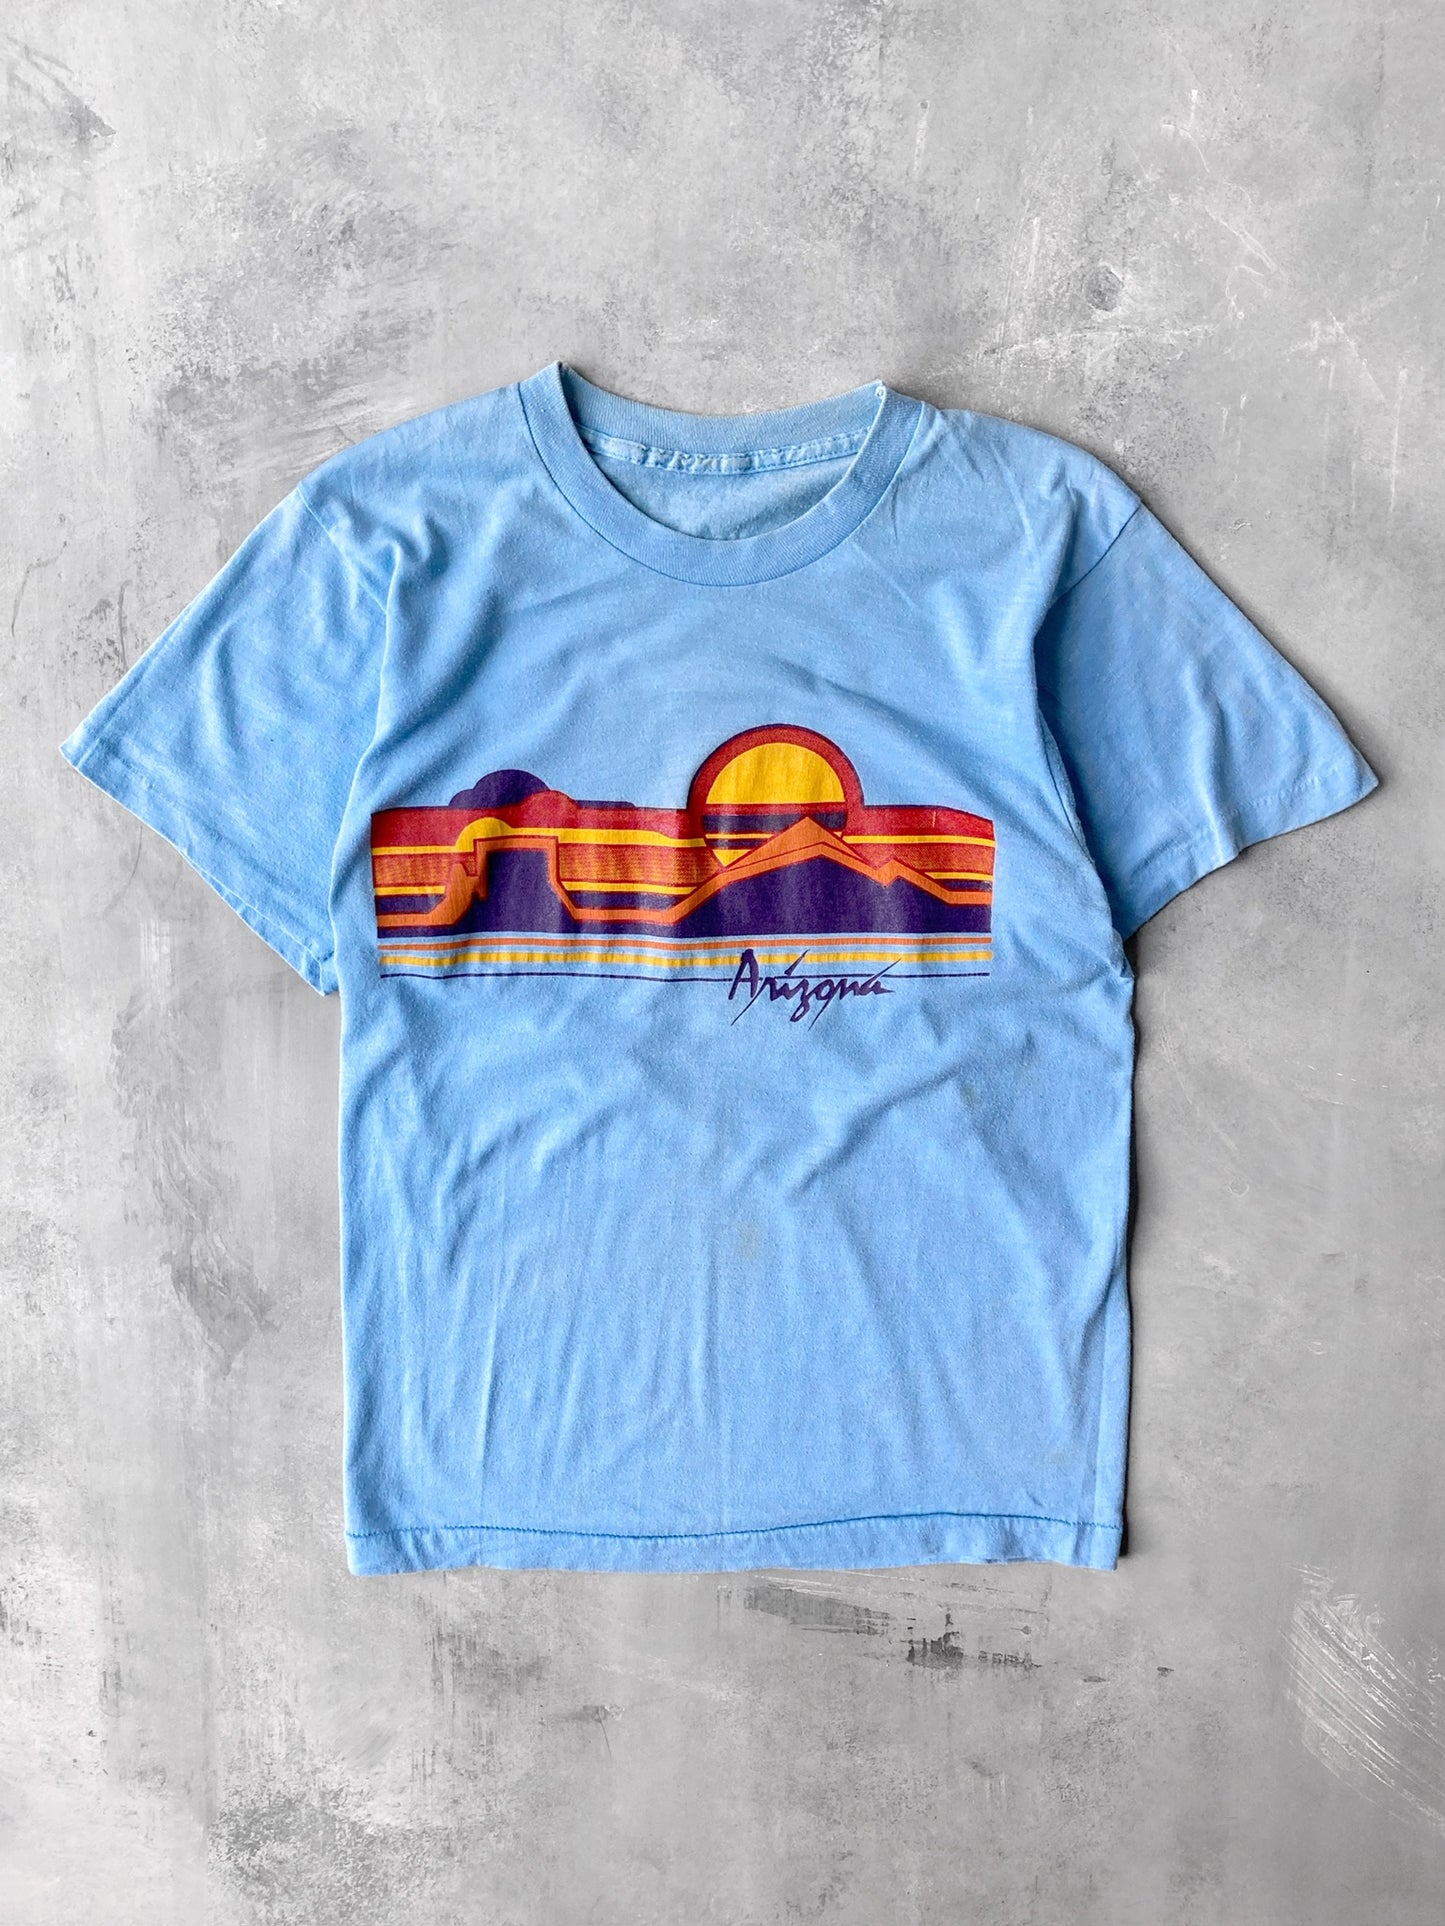 Arizona Graphic T-Shirt 80's - Small